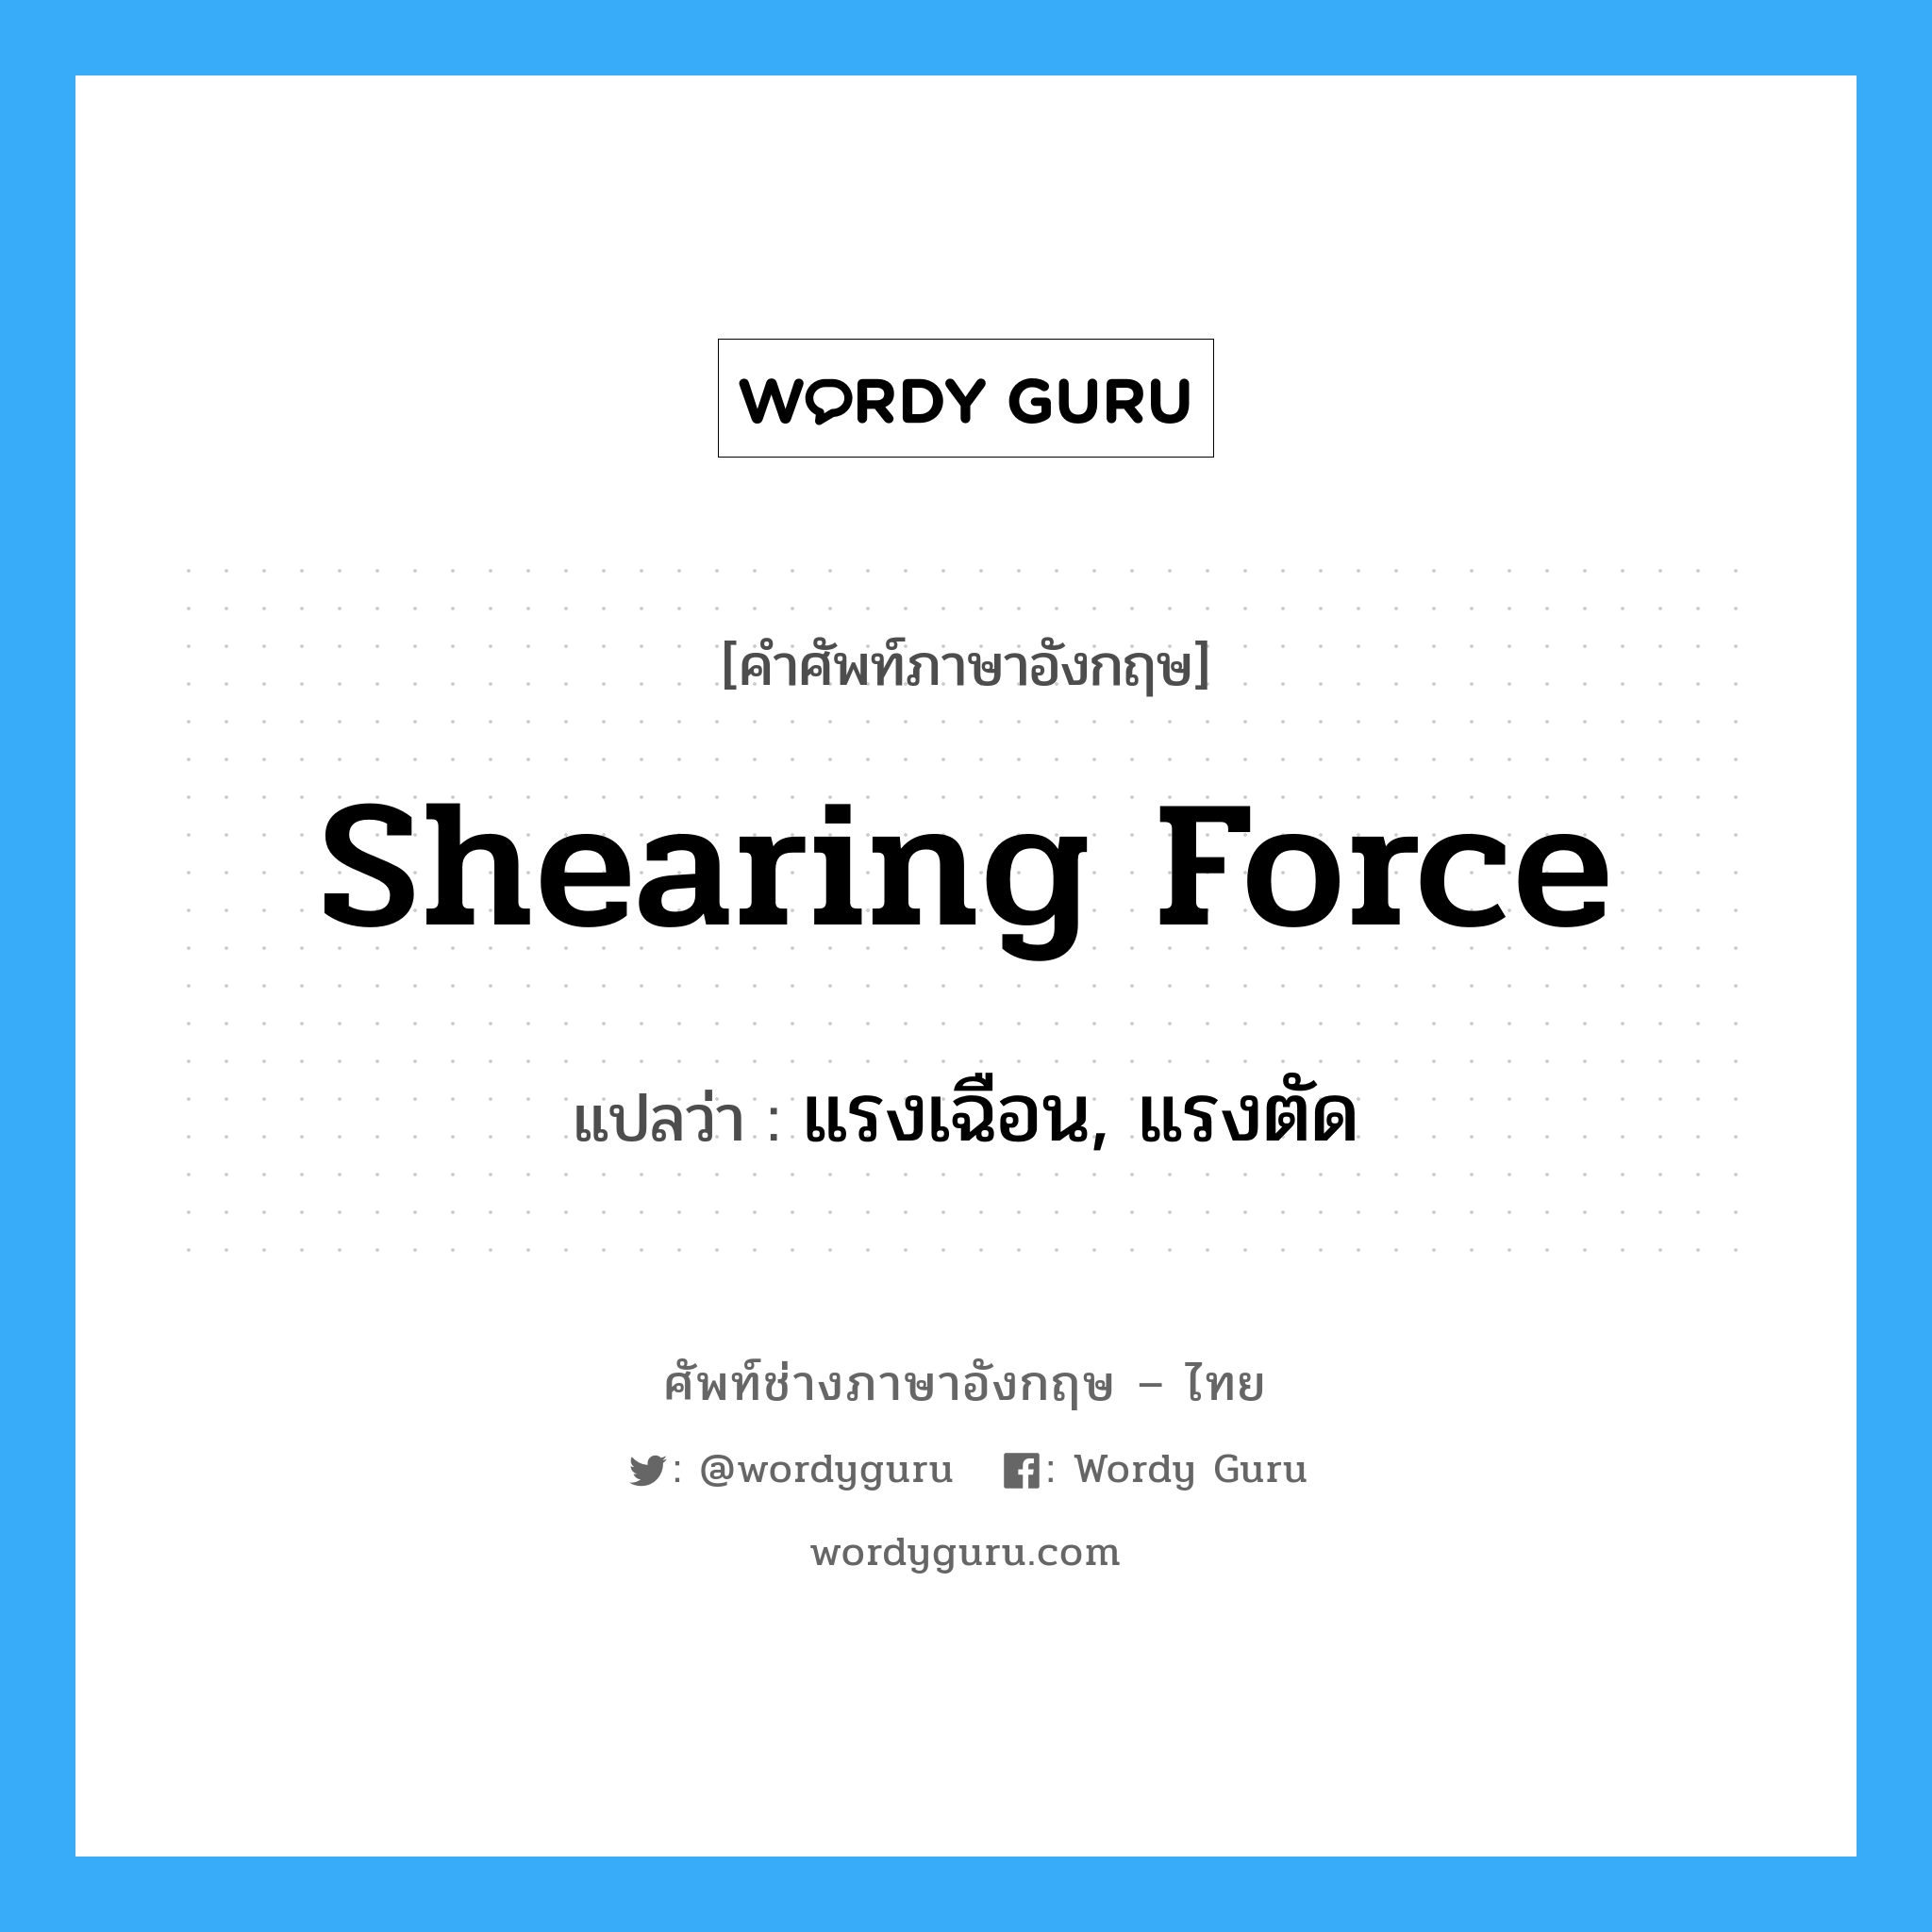 shearing force แปลว่า?, คำศัพท์ช่างภาษาอังกฤษ - ไทย shearing force คำศัพท์ภาษาอังกฤษ shearing force แปลว่า แรงเฉือน, แรงตัด